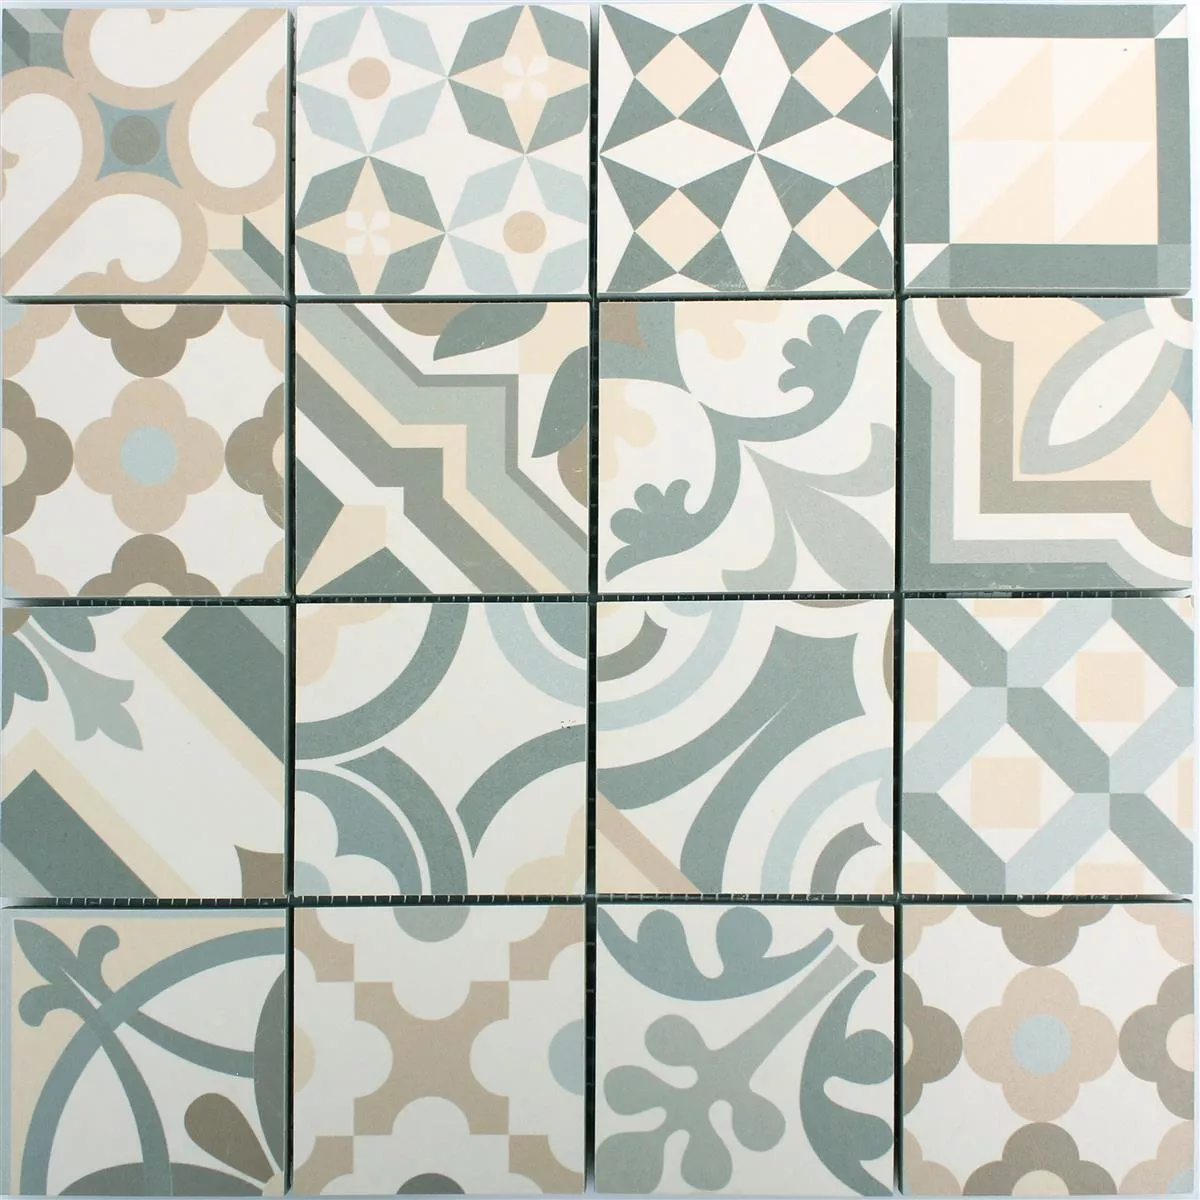 Campione Ceramica Mosaico Retro Piastrelle Utopia Grigio Beige R10/B